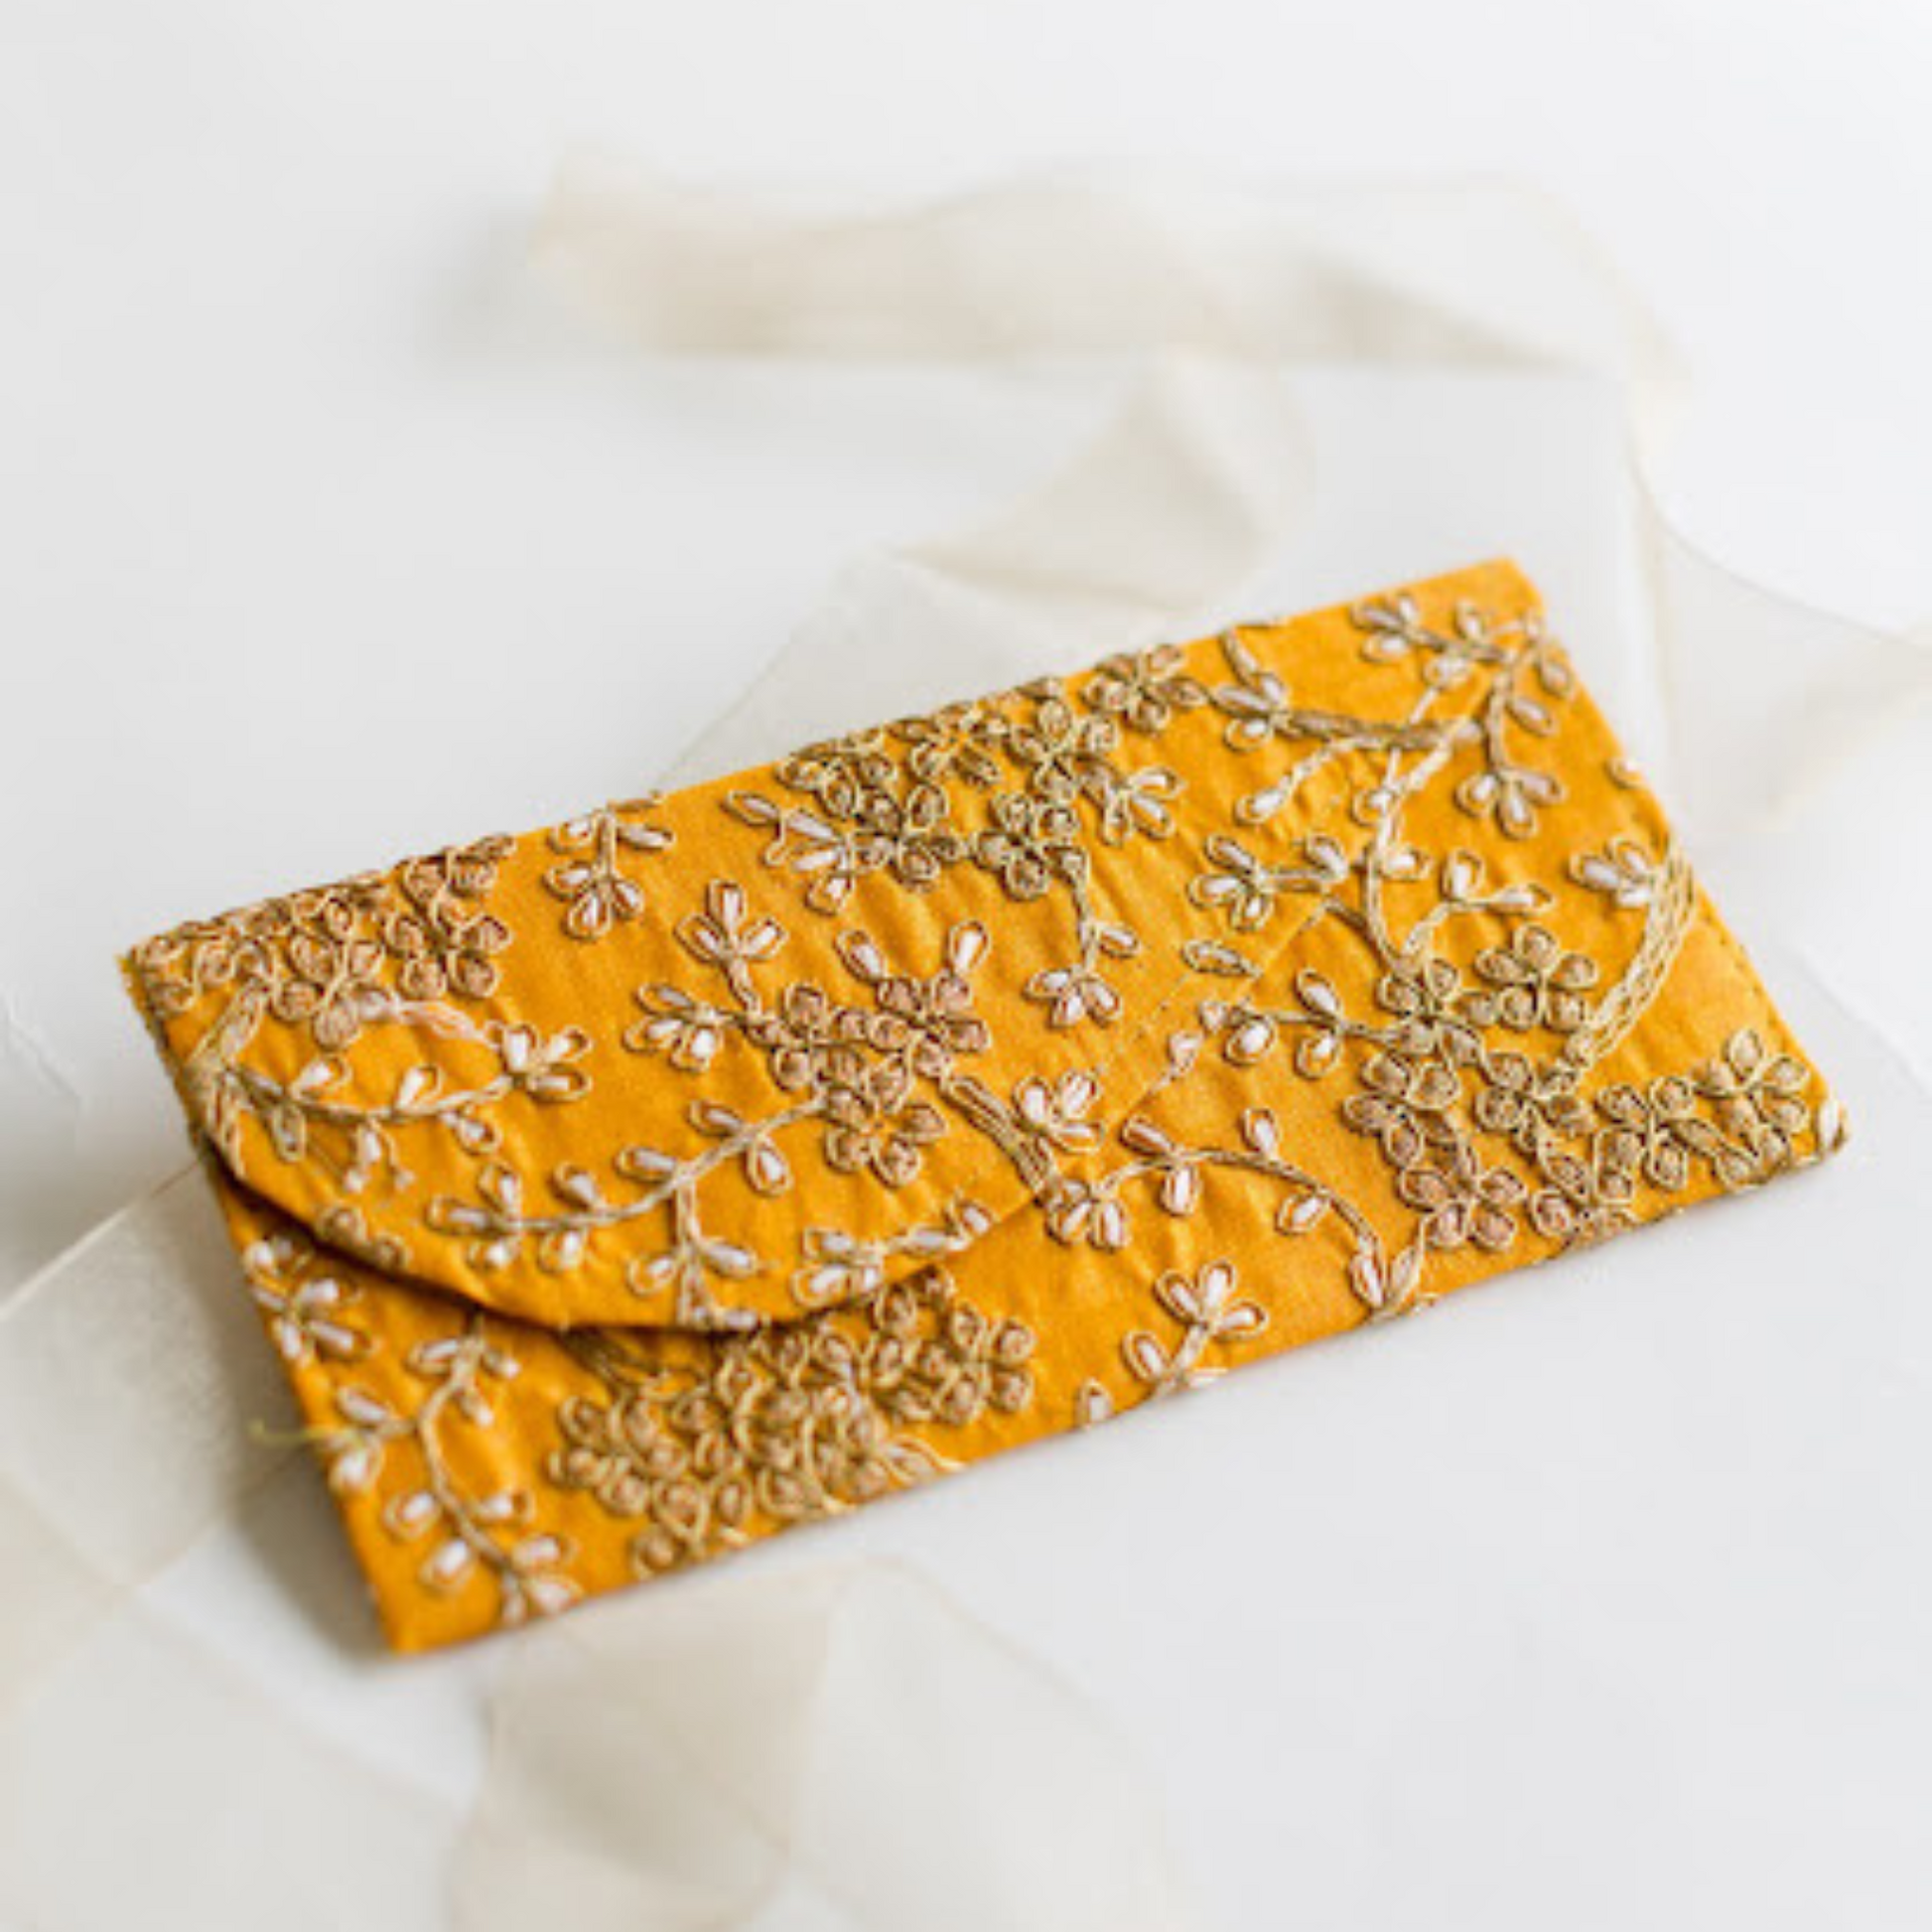 yellow embroidery shugun india money envelopes